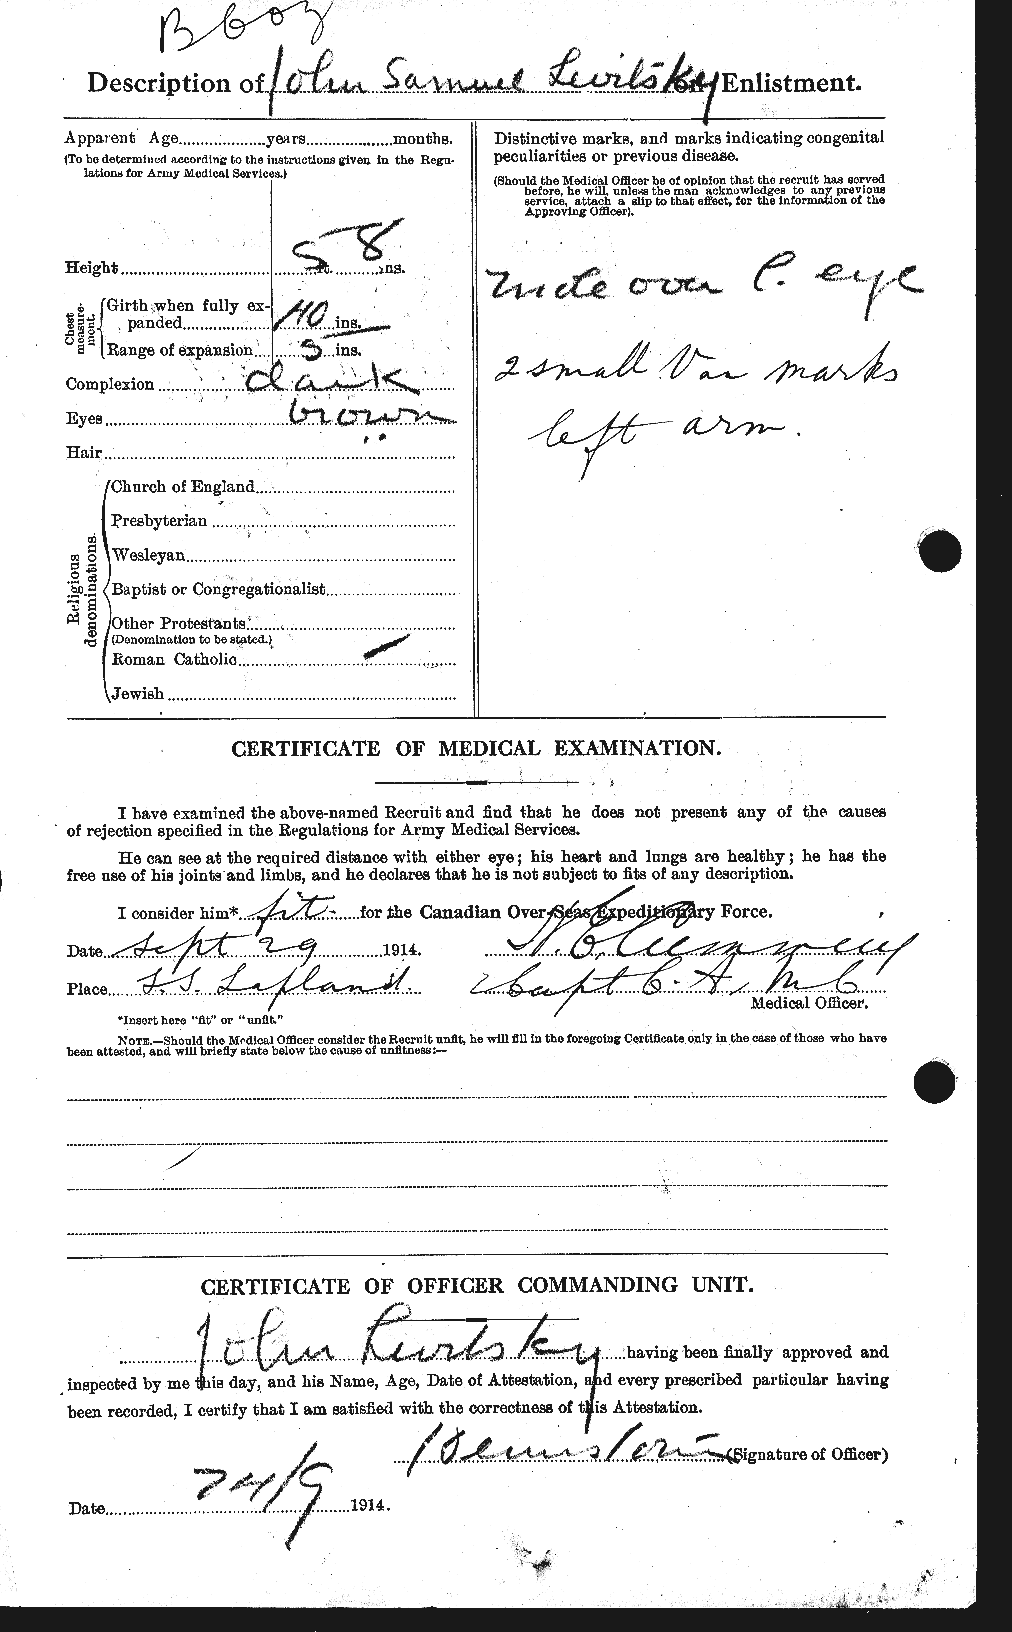 Dossiers du Personnel de la Première Guerre mondiale - CEC 462754b